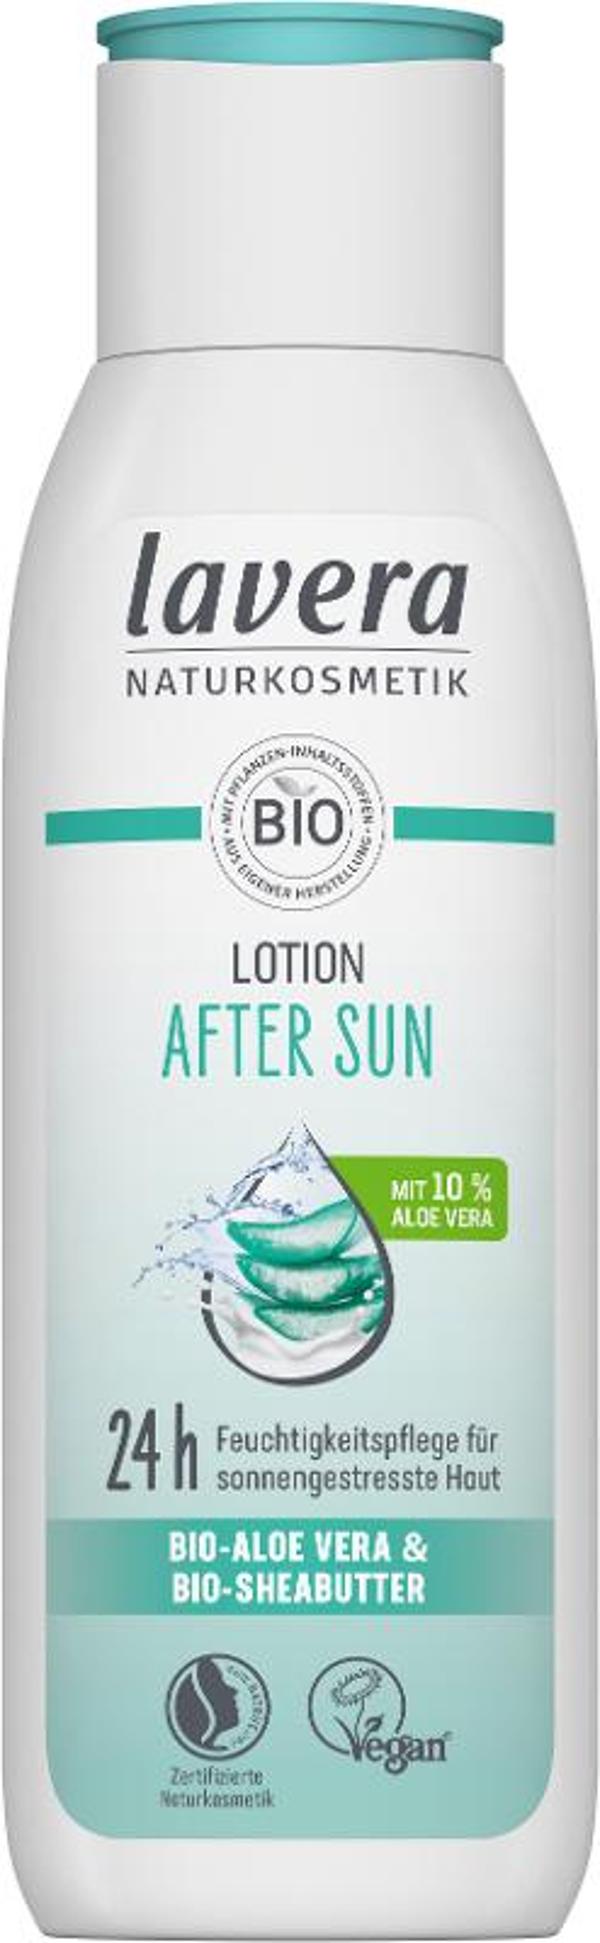 Produktfoto zu After Sun Lotion von Eco cosmetics 75ml